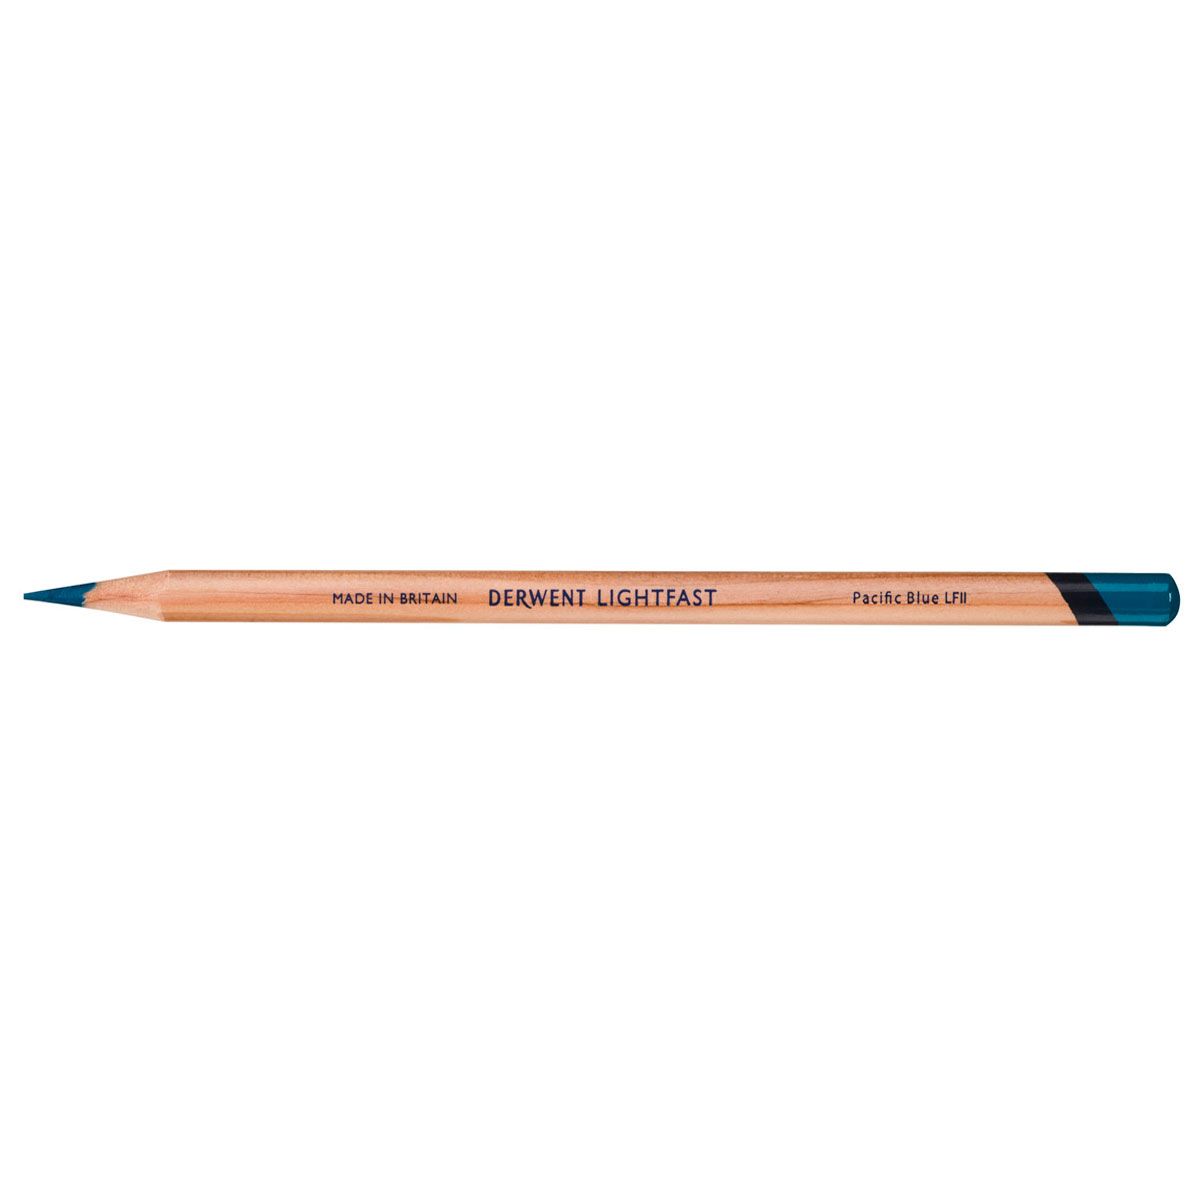 NEW Derwent Lightfast Pencil Colour: Pacific Blue